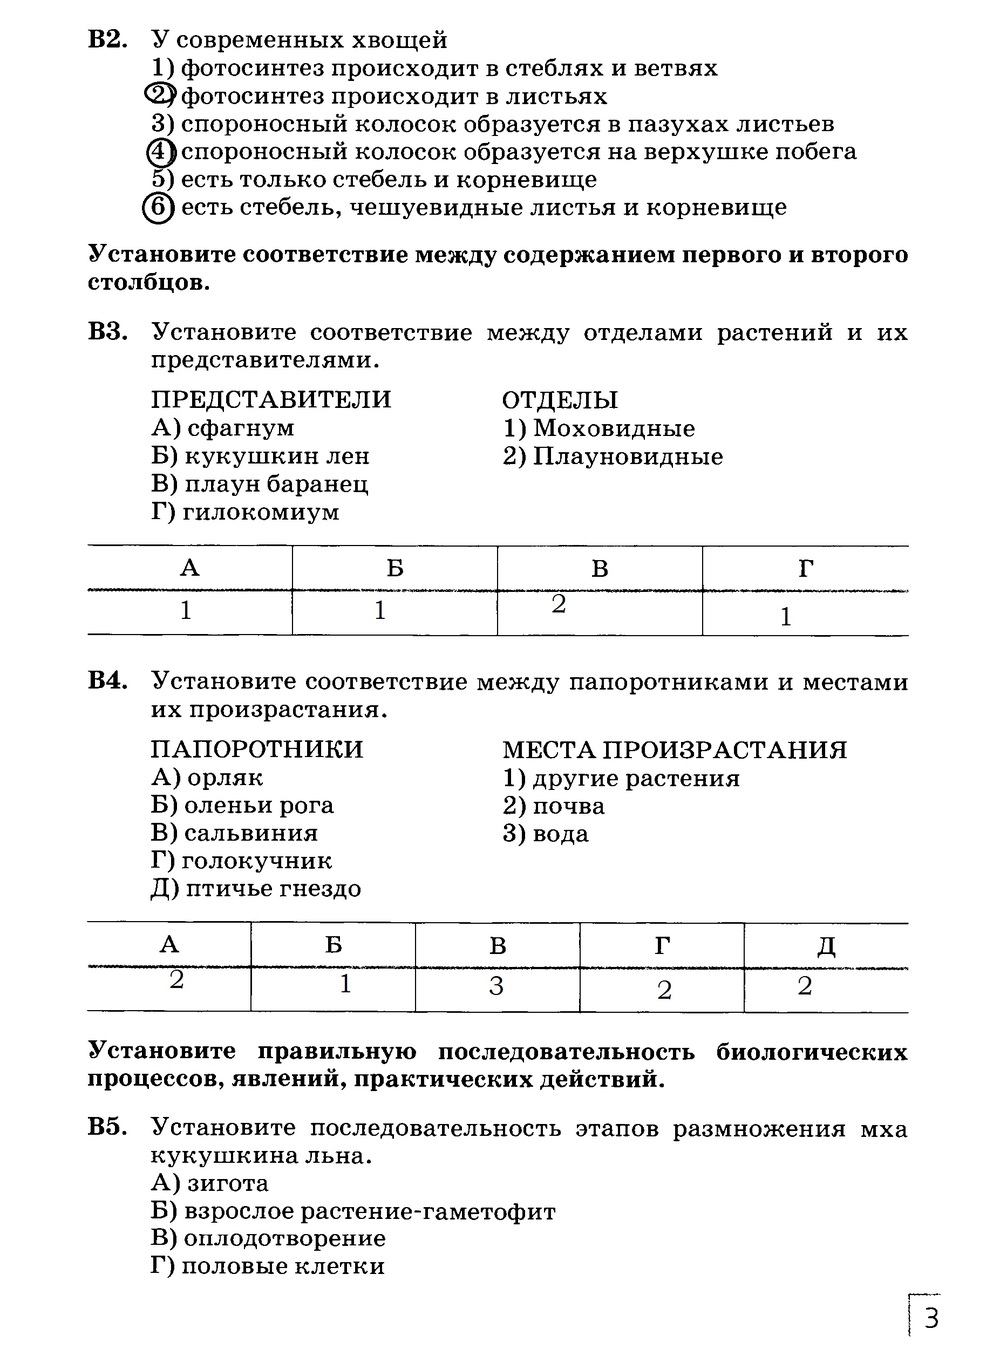 Рабочая тетрадь, 7 класс, Захаров В.Б., Сонин Н.И., 2015, задание: стр. 35